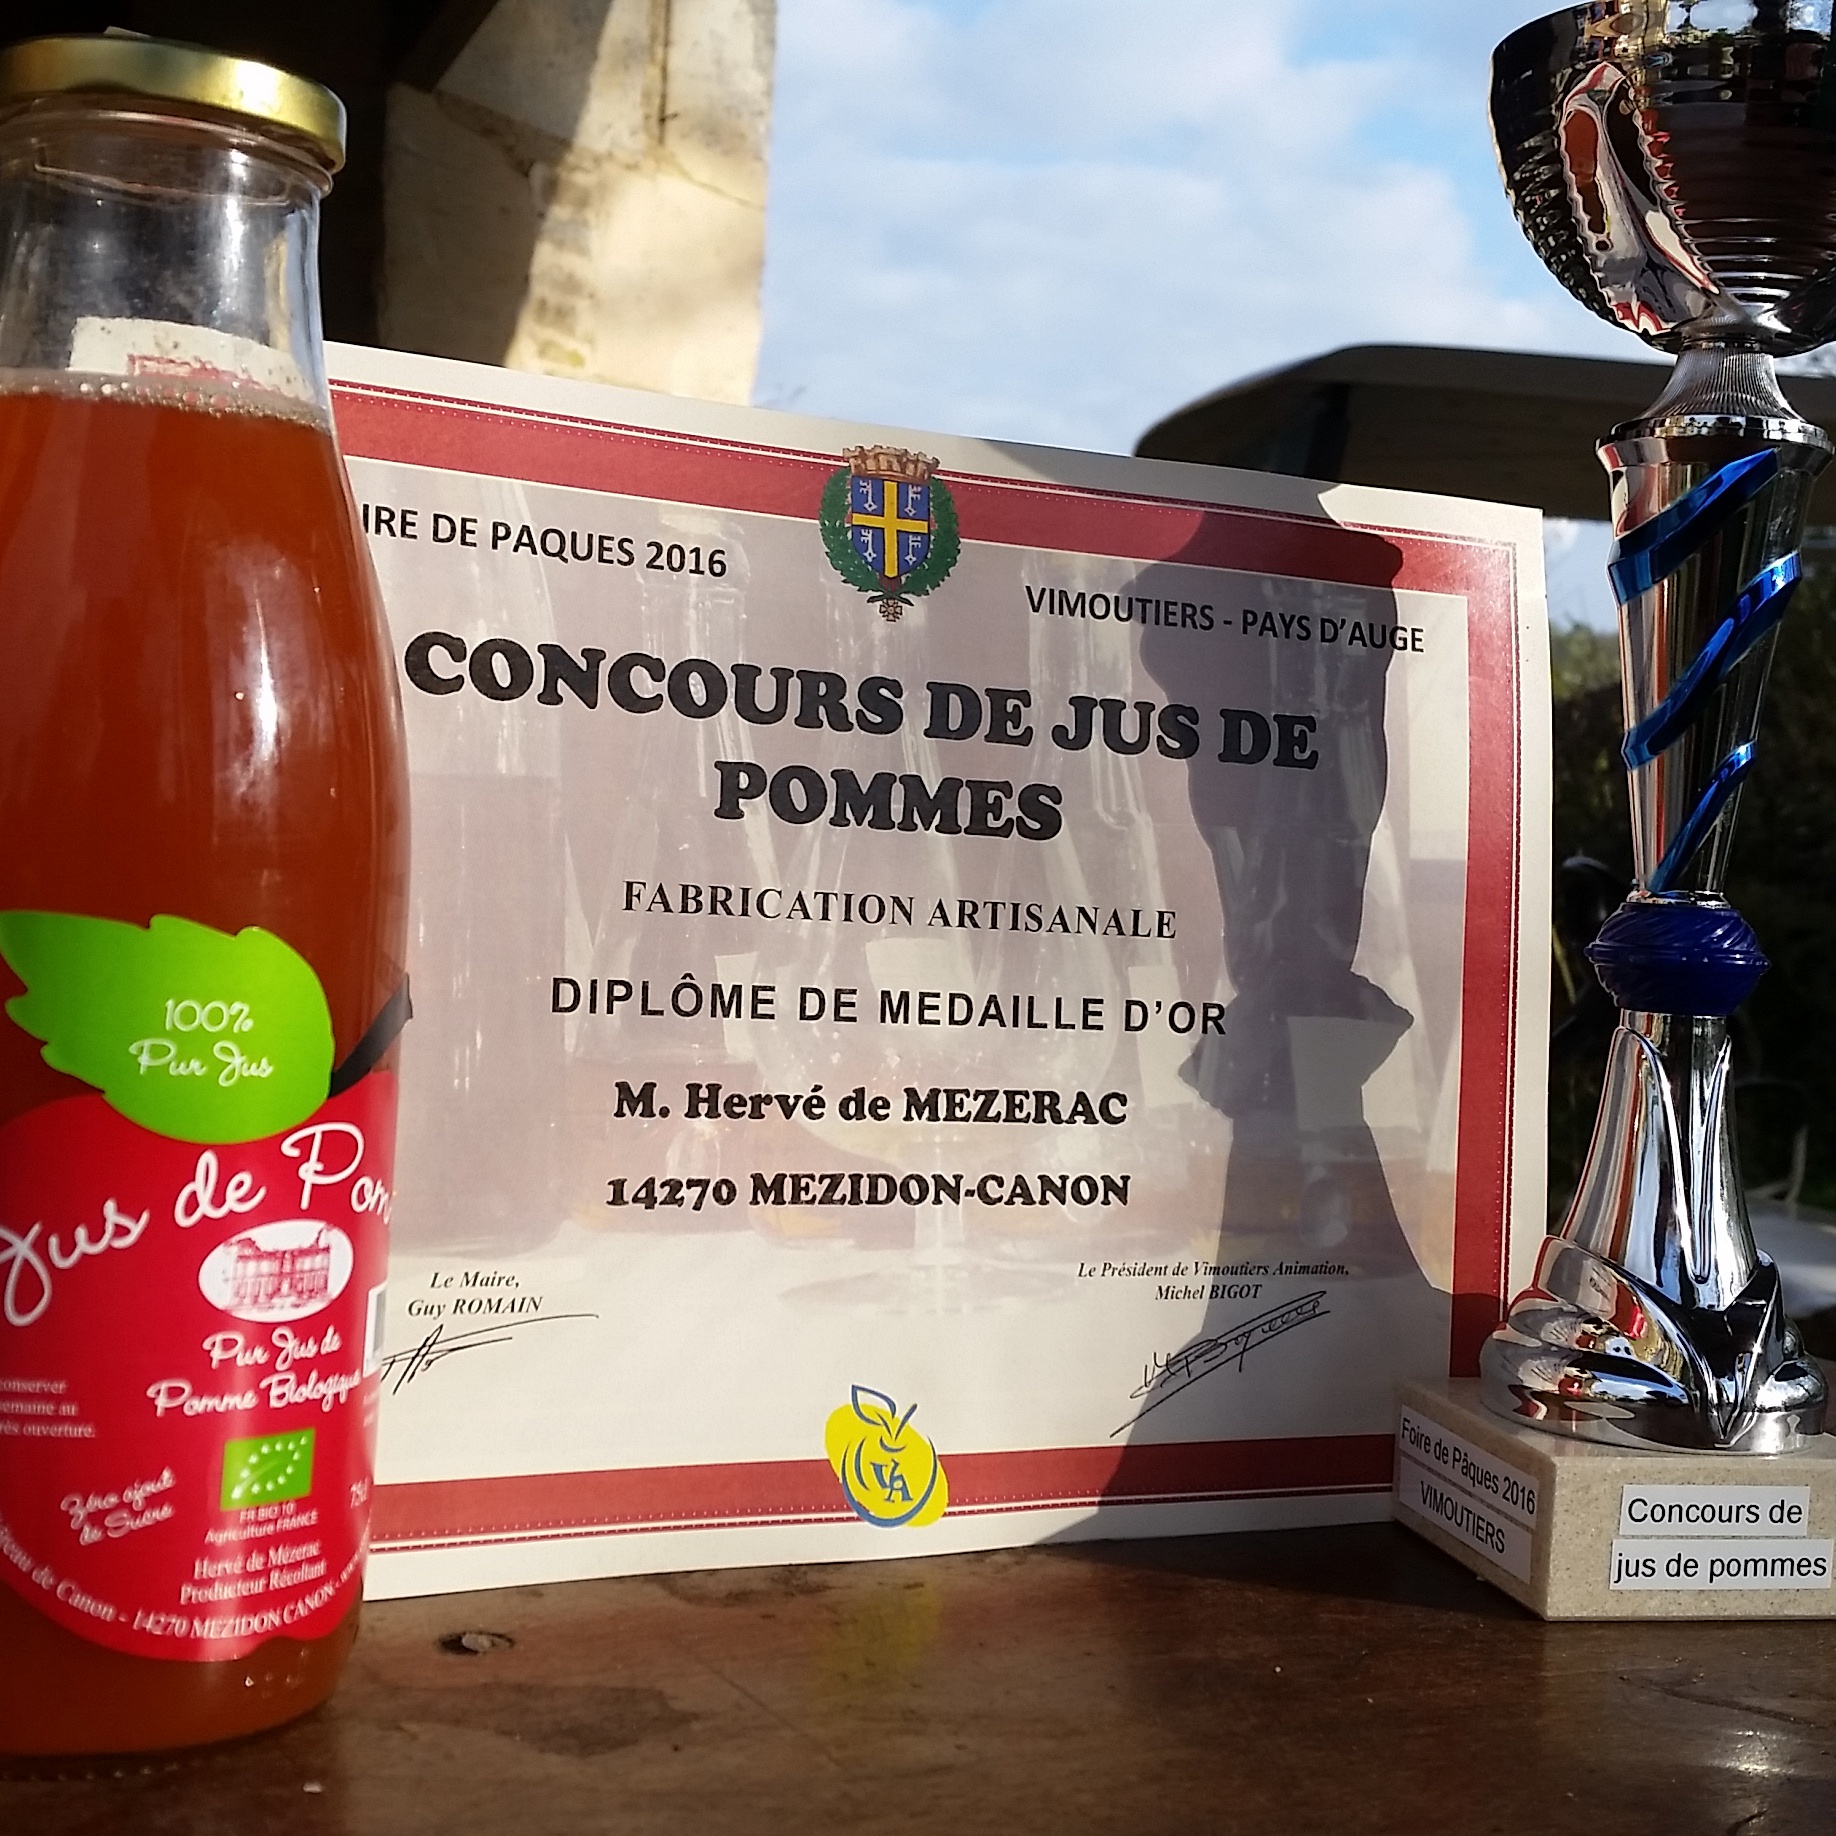 Premier prix au concours de jus de pommes grâce à notre jus 100% pur jus et bio sans sucres ajoutés, sans artifices, produit dans notre ferme à Ouézy dans la Normandie